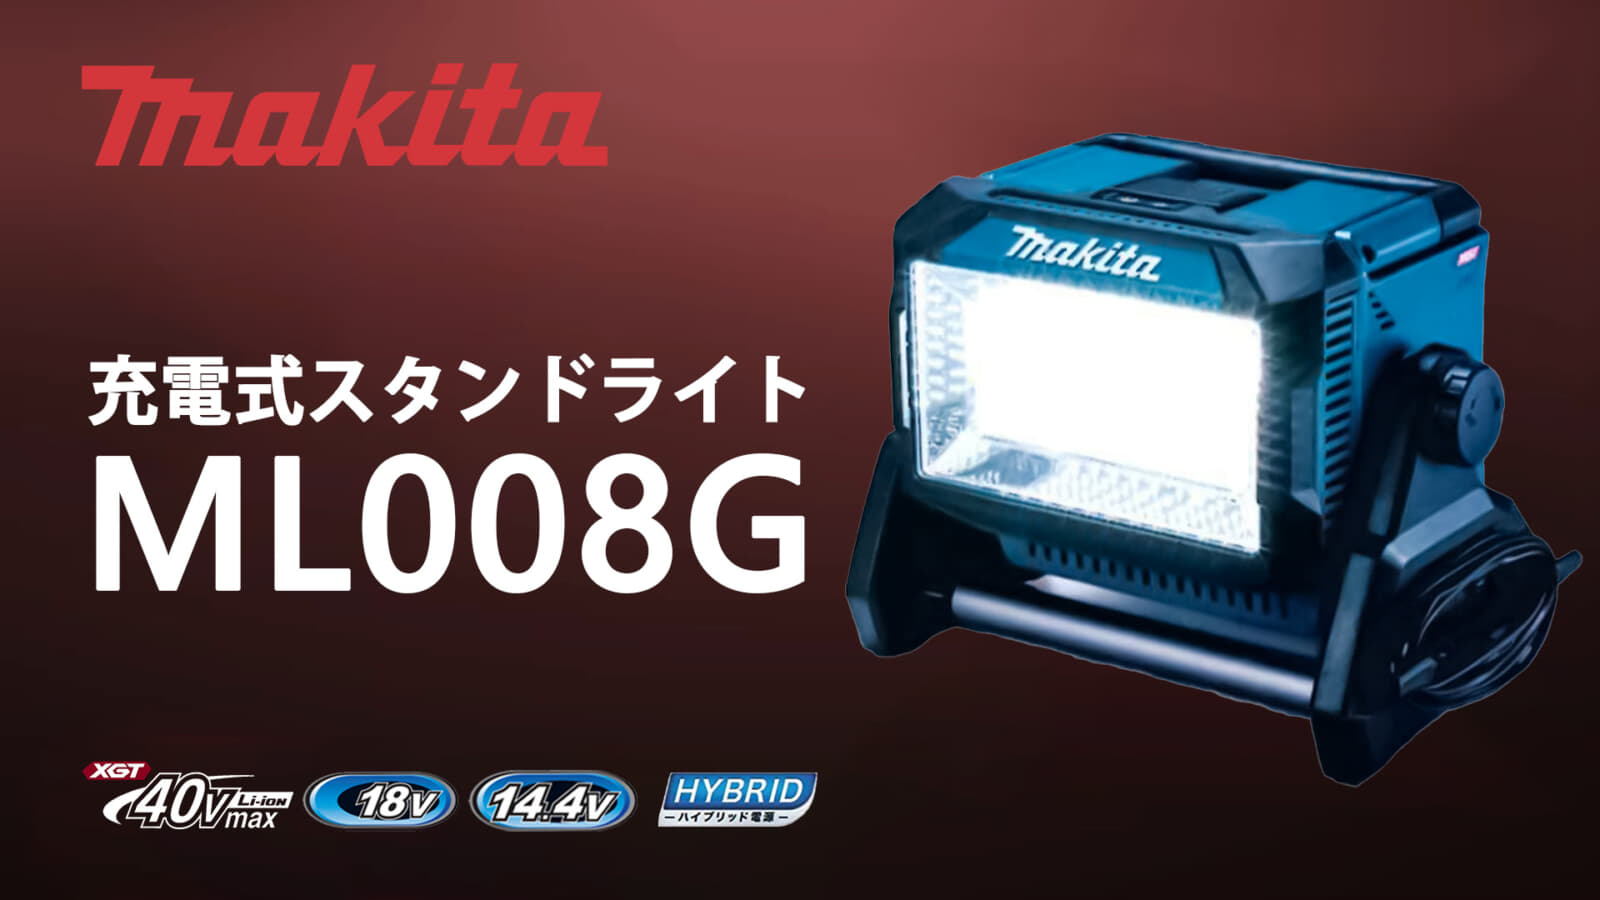 マキタ ML008G 充電式スタンドライトを発売、40Vmax対応の10,000lmモデル